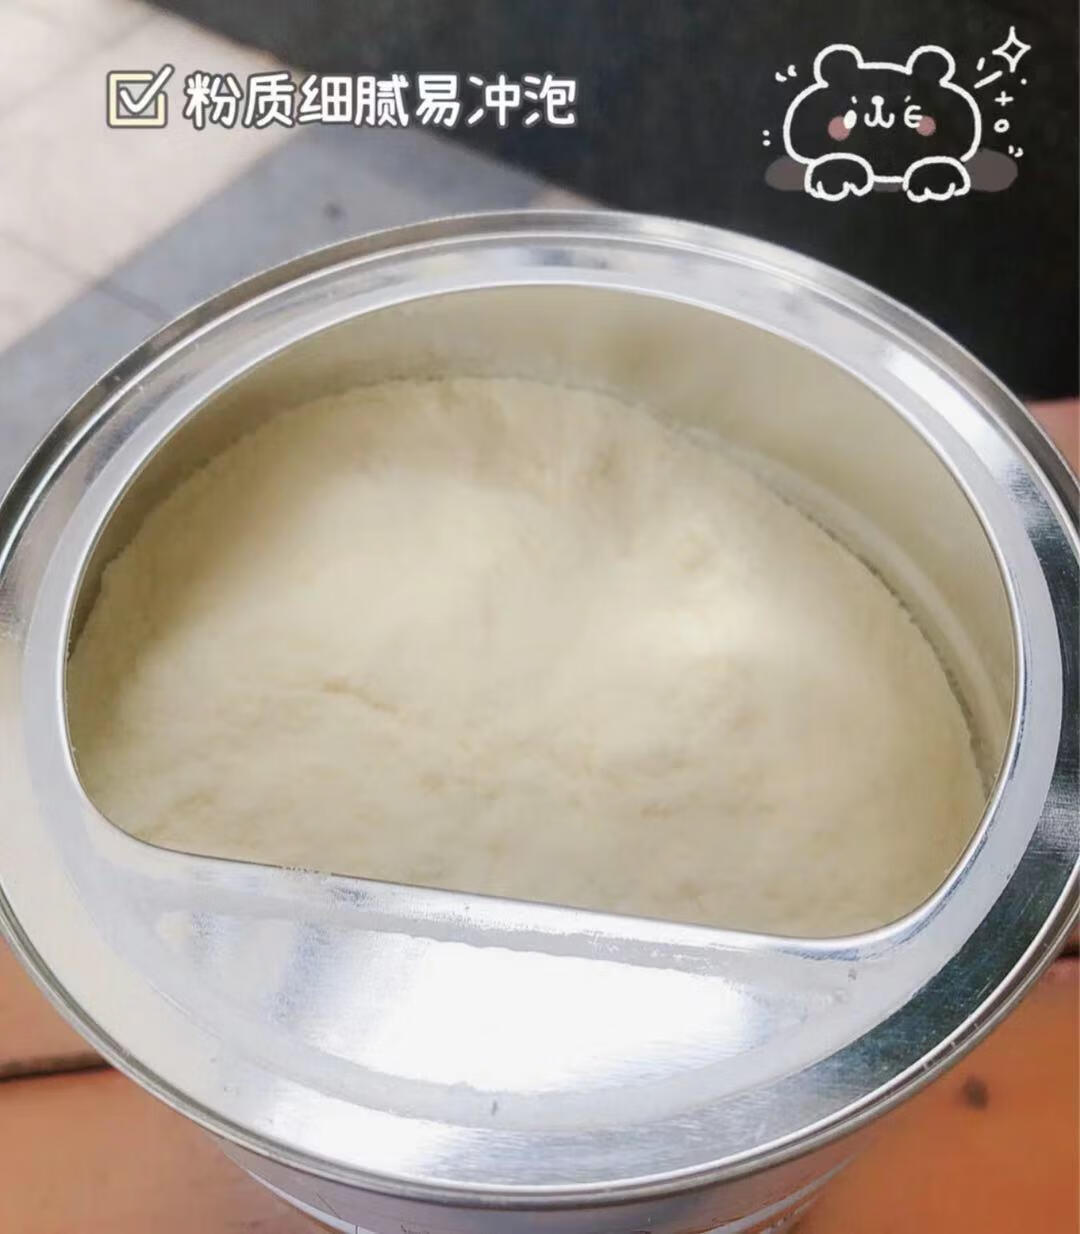 安全奶粉品牌(中国现在最安全的奶粉)